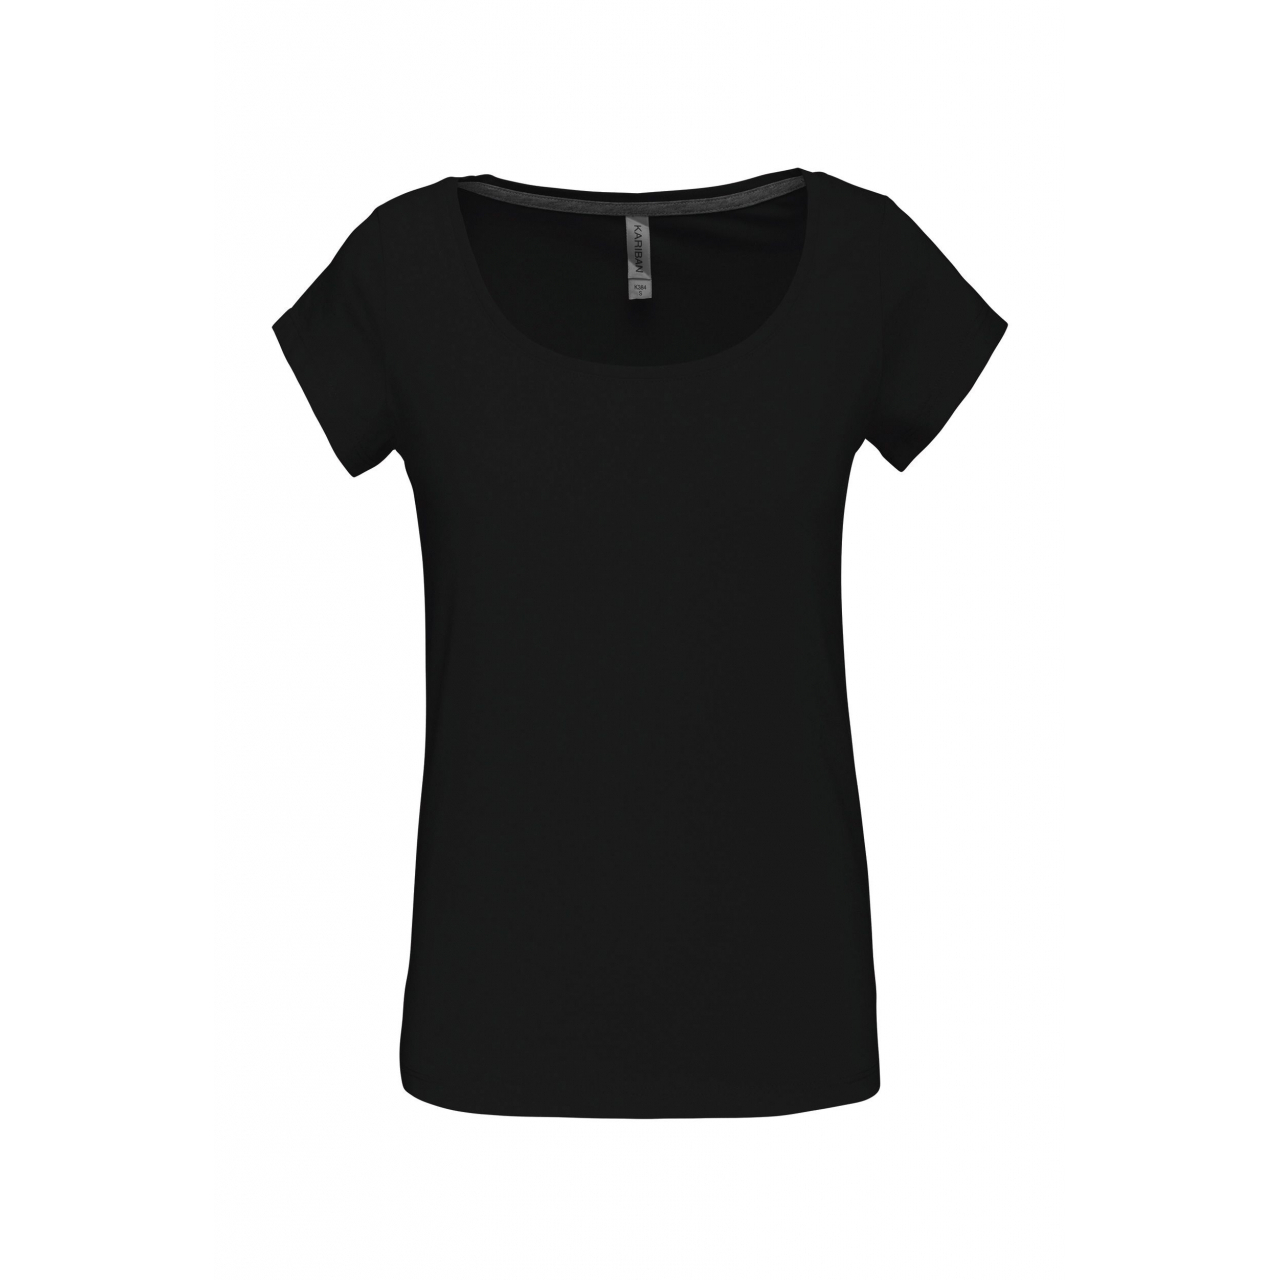 Dámské tričko Kariban s lodičkovým výstřihem - černé, XXL